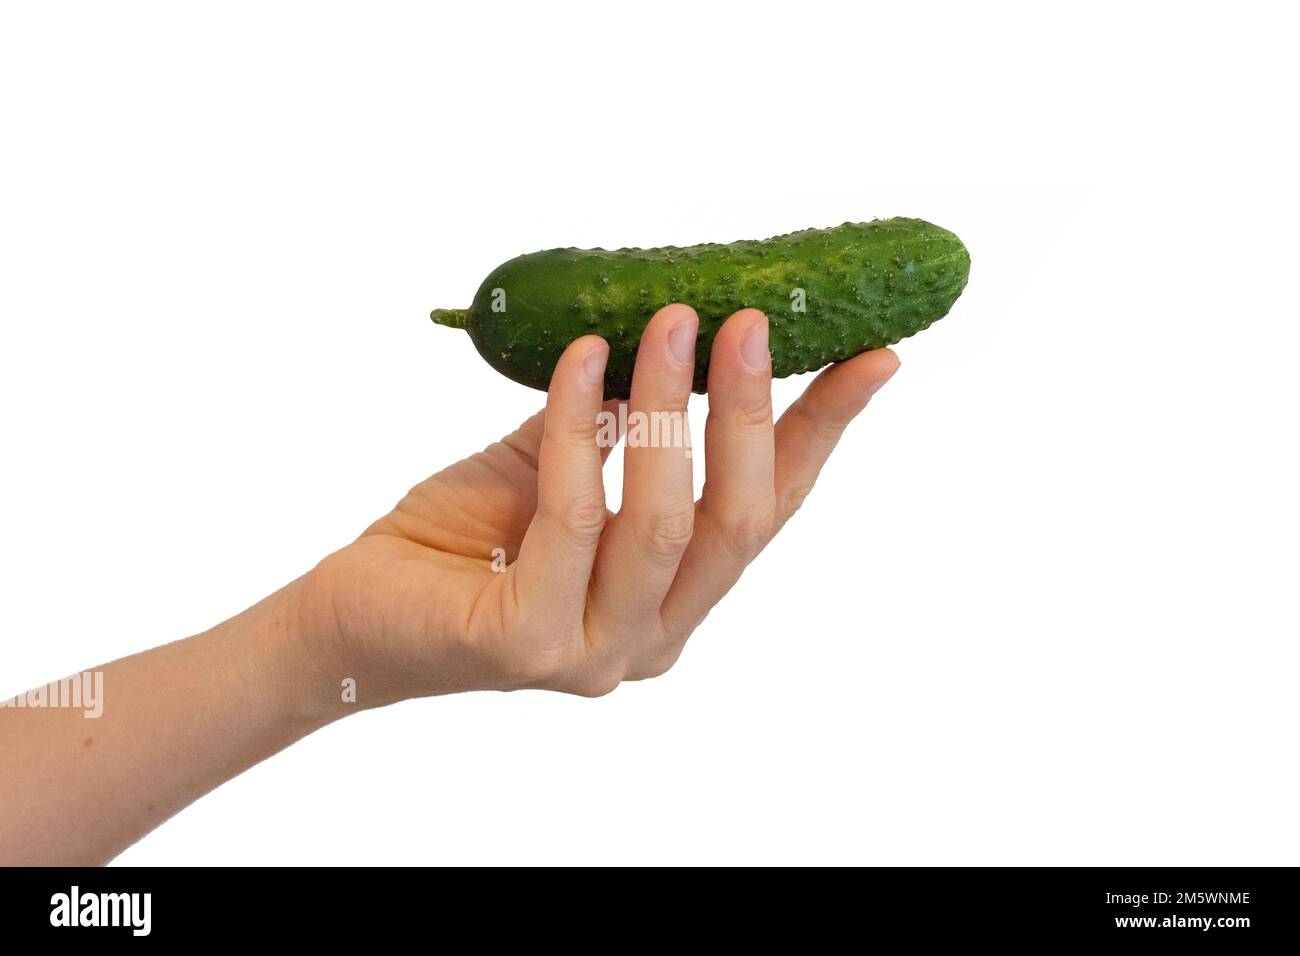 Jeune femme tenant un concombre. Légumes verts savoureux à la main. Alimentation saine. Ingrédients naturels pour les plats et la salade. Photo isolée sur bac blanc Banque D'Images